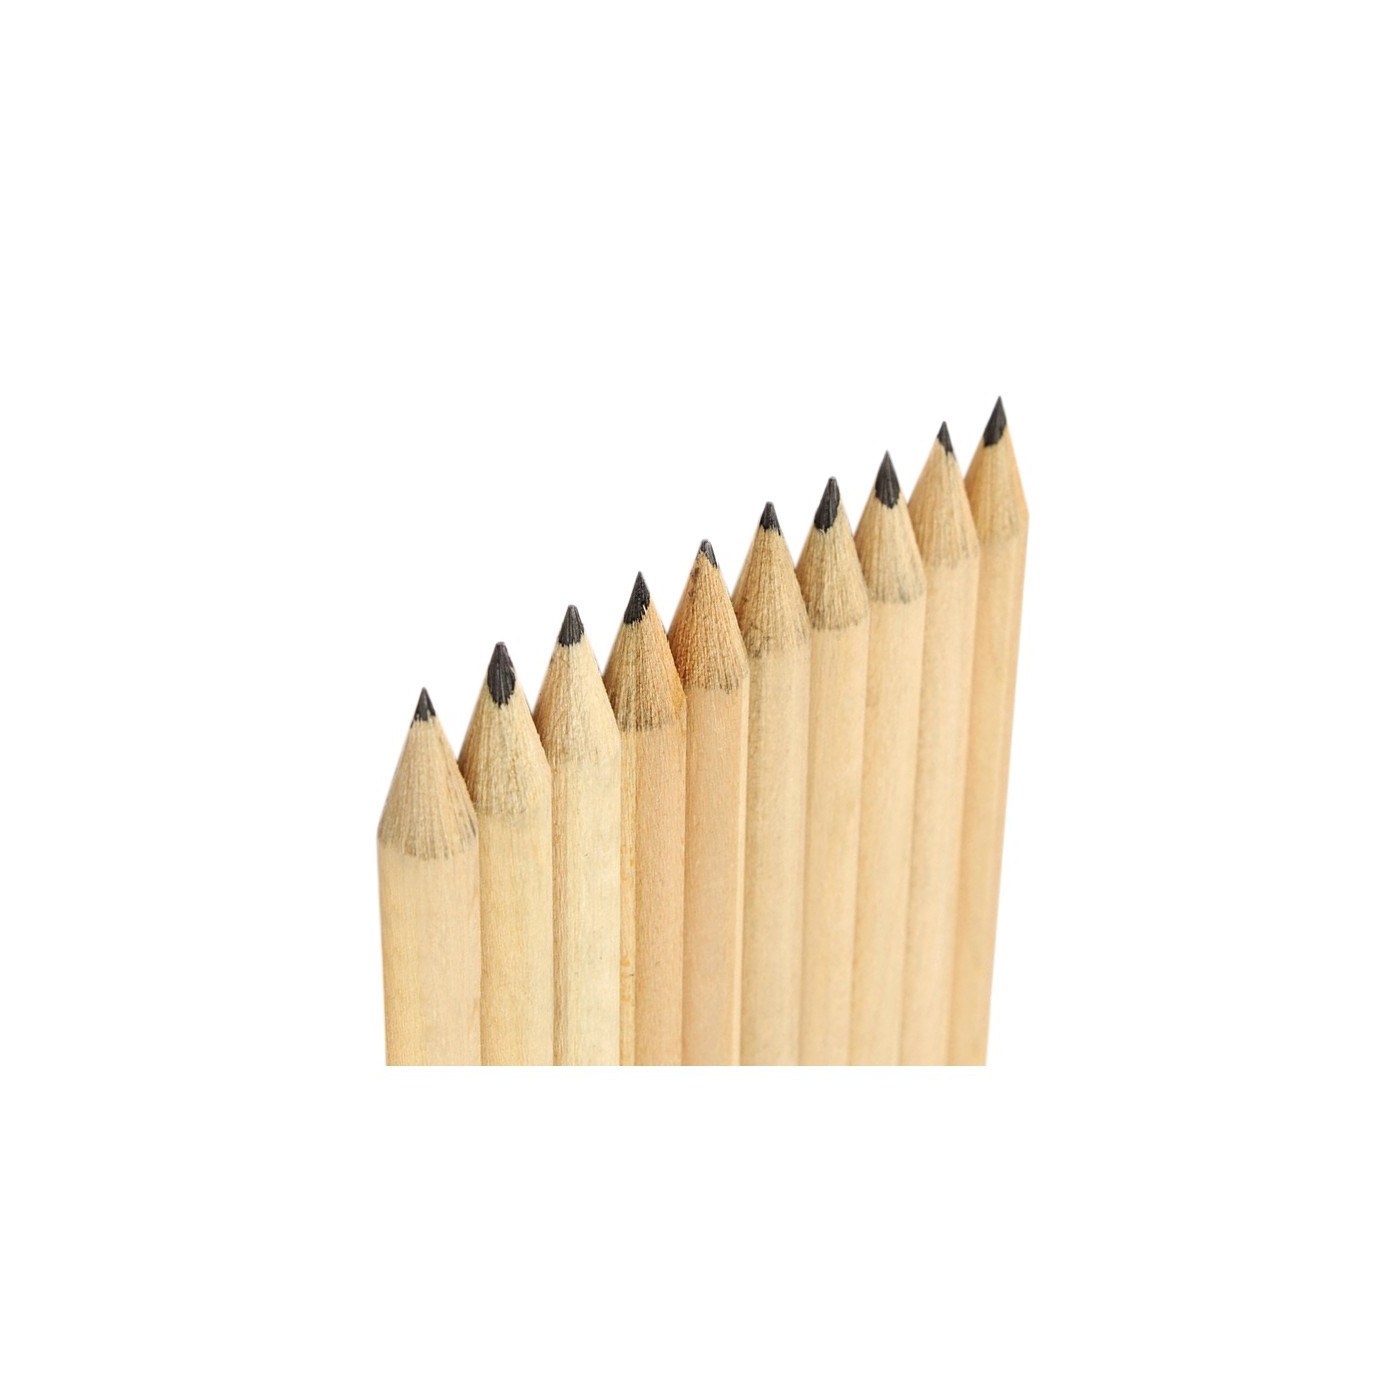 Set de 400 mini lápices (tipo 3: 10 cm, con goma, en caja)